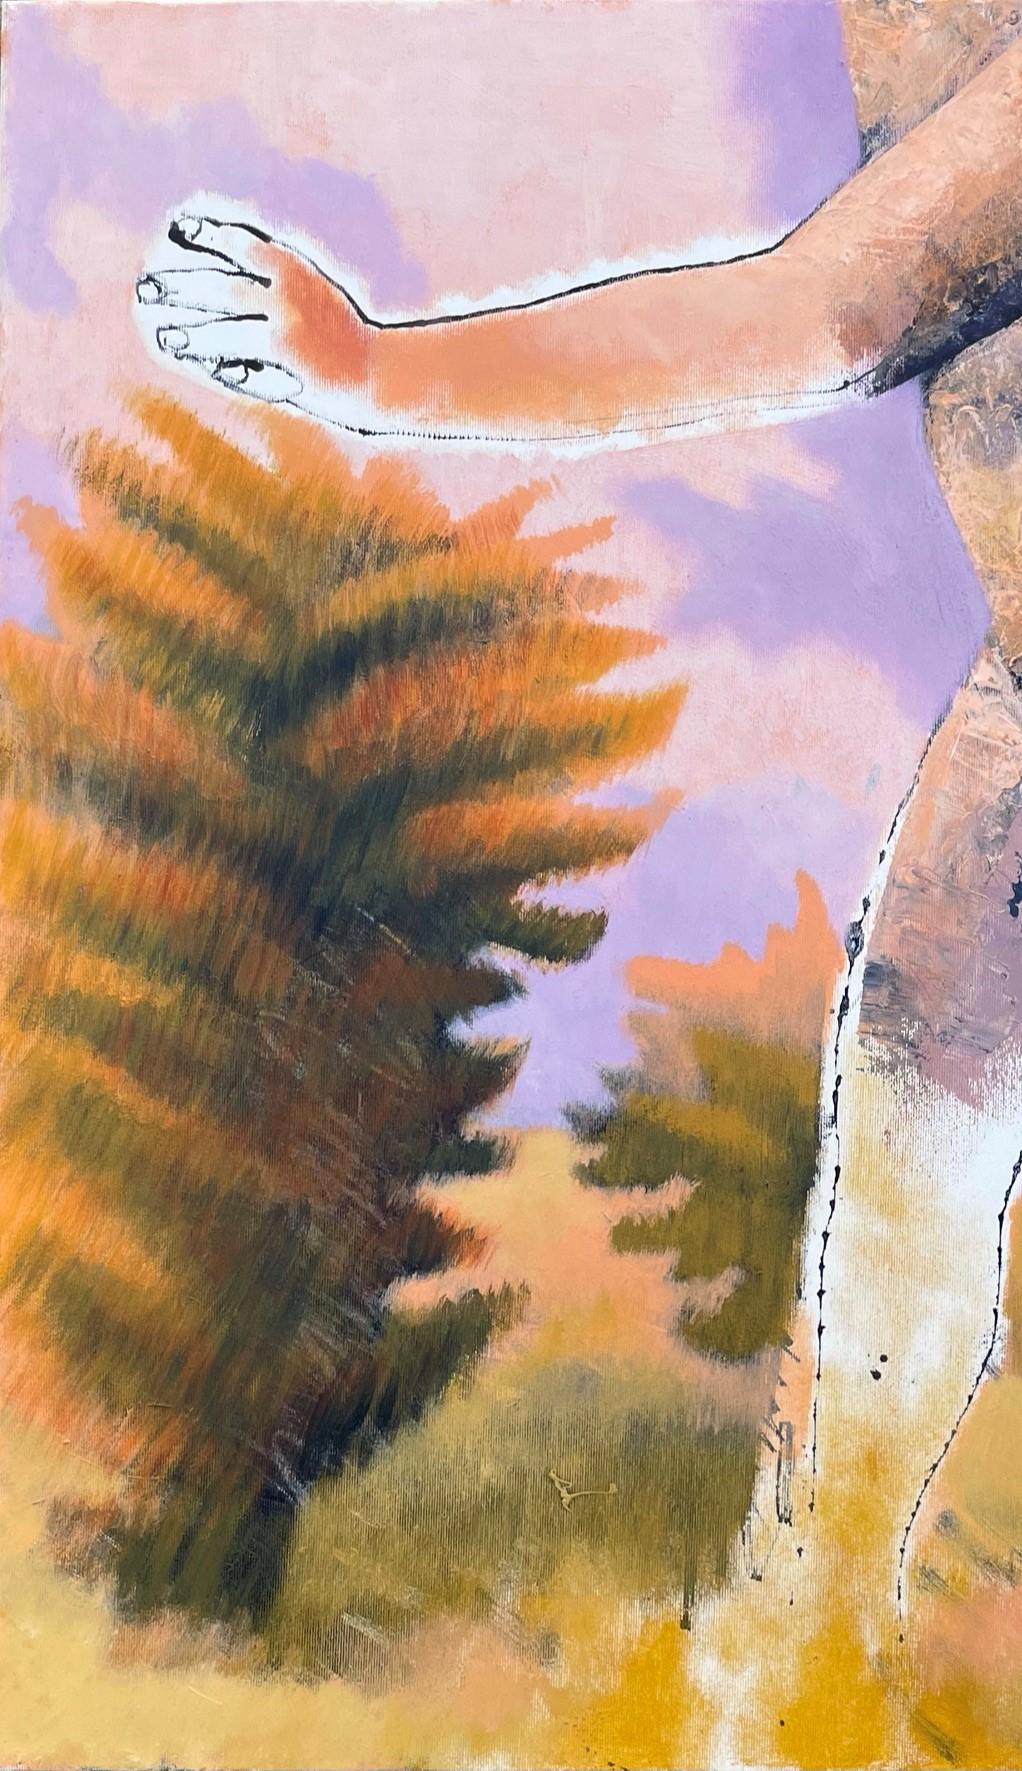 Figure, die in einer trockenen Landschaft geht, 21. Jahrhundert, männlich, nackt, Natur, Sommer (Zeitgenössisch), Painting, von Alexandru Rădvan